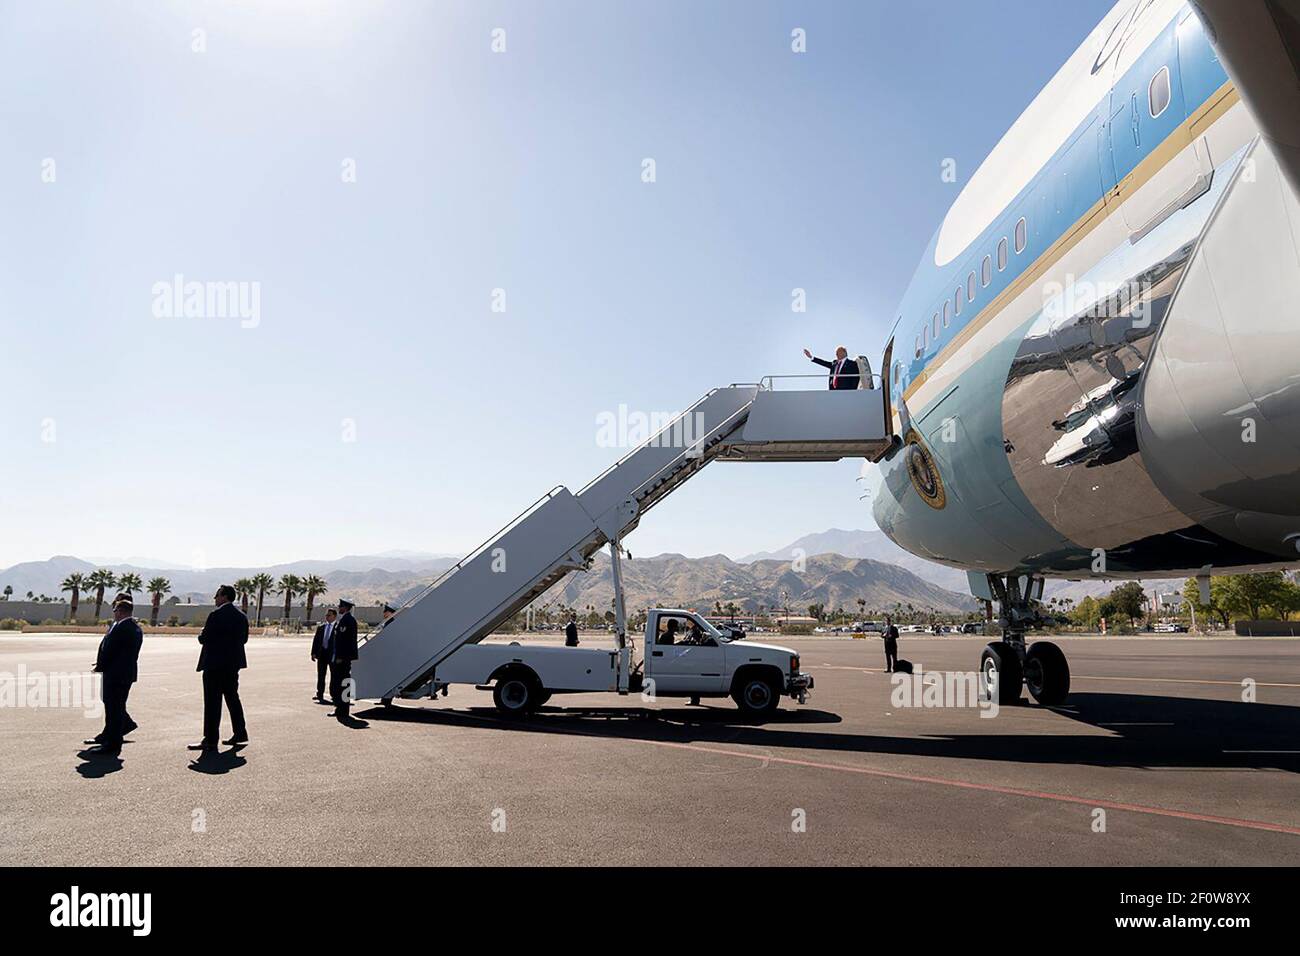 Le président Donald Trump fait des vagues lorsqu'il débarque Air Force One à l'aéroport international de Palm Spring à Palm Springs en Californie, le mercredi 19 2020 février en route pour un événement au parcours de golf de Porcupine Creek à Rancho Mirage Calif Banque D'Images